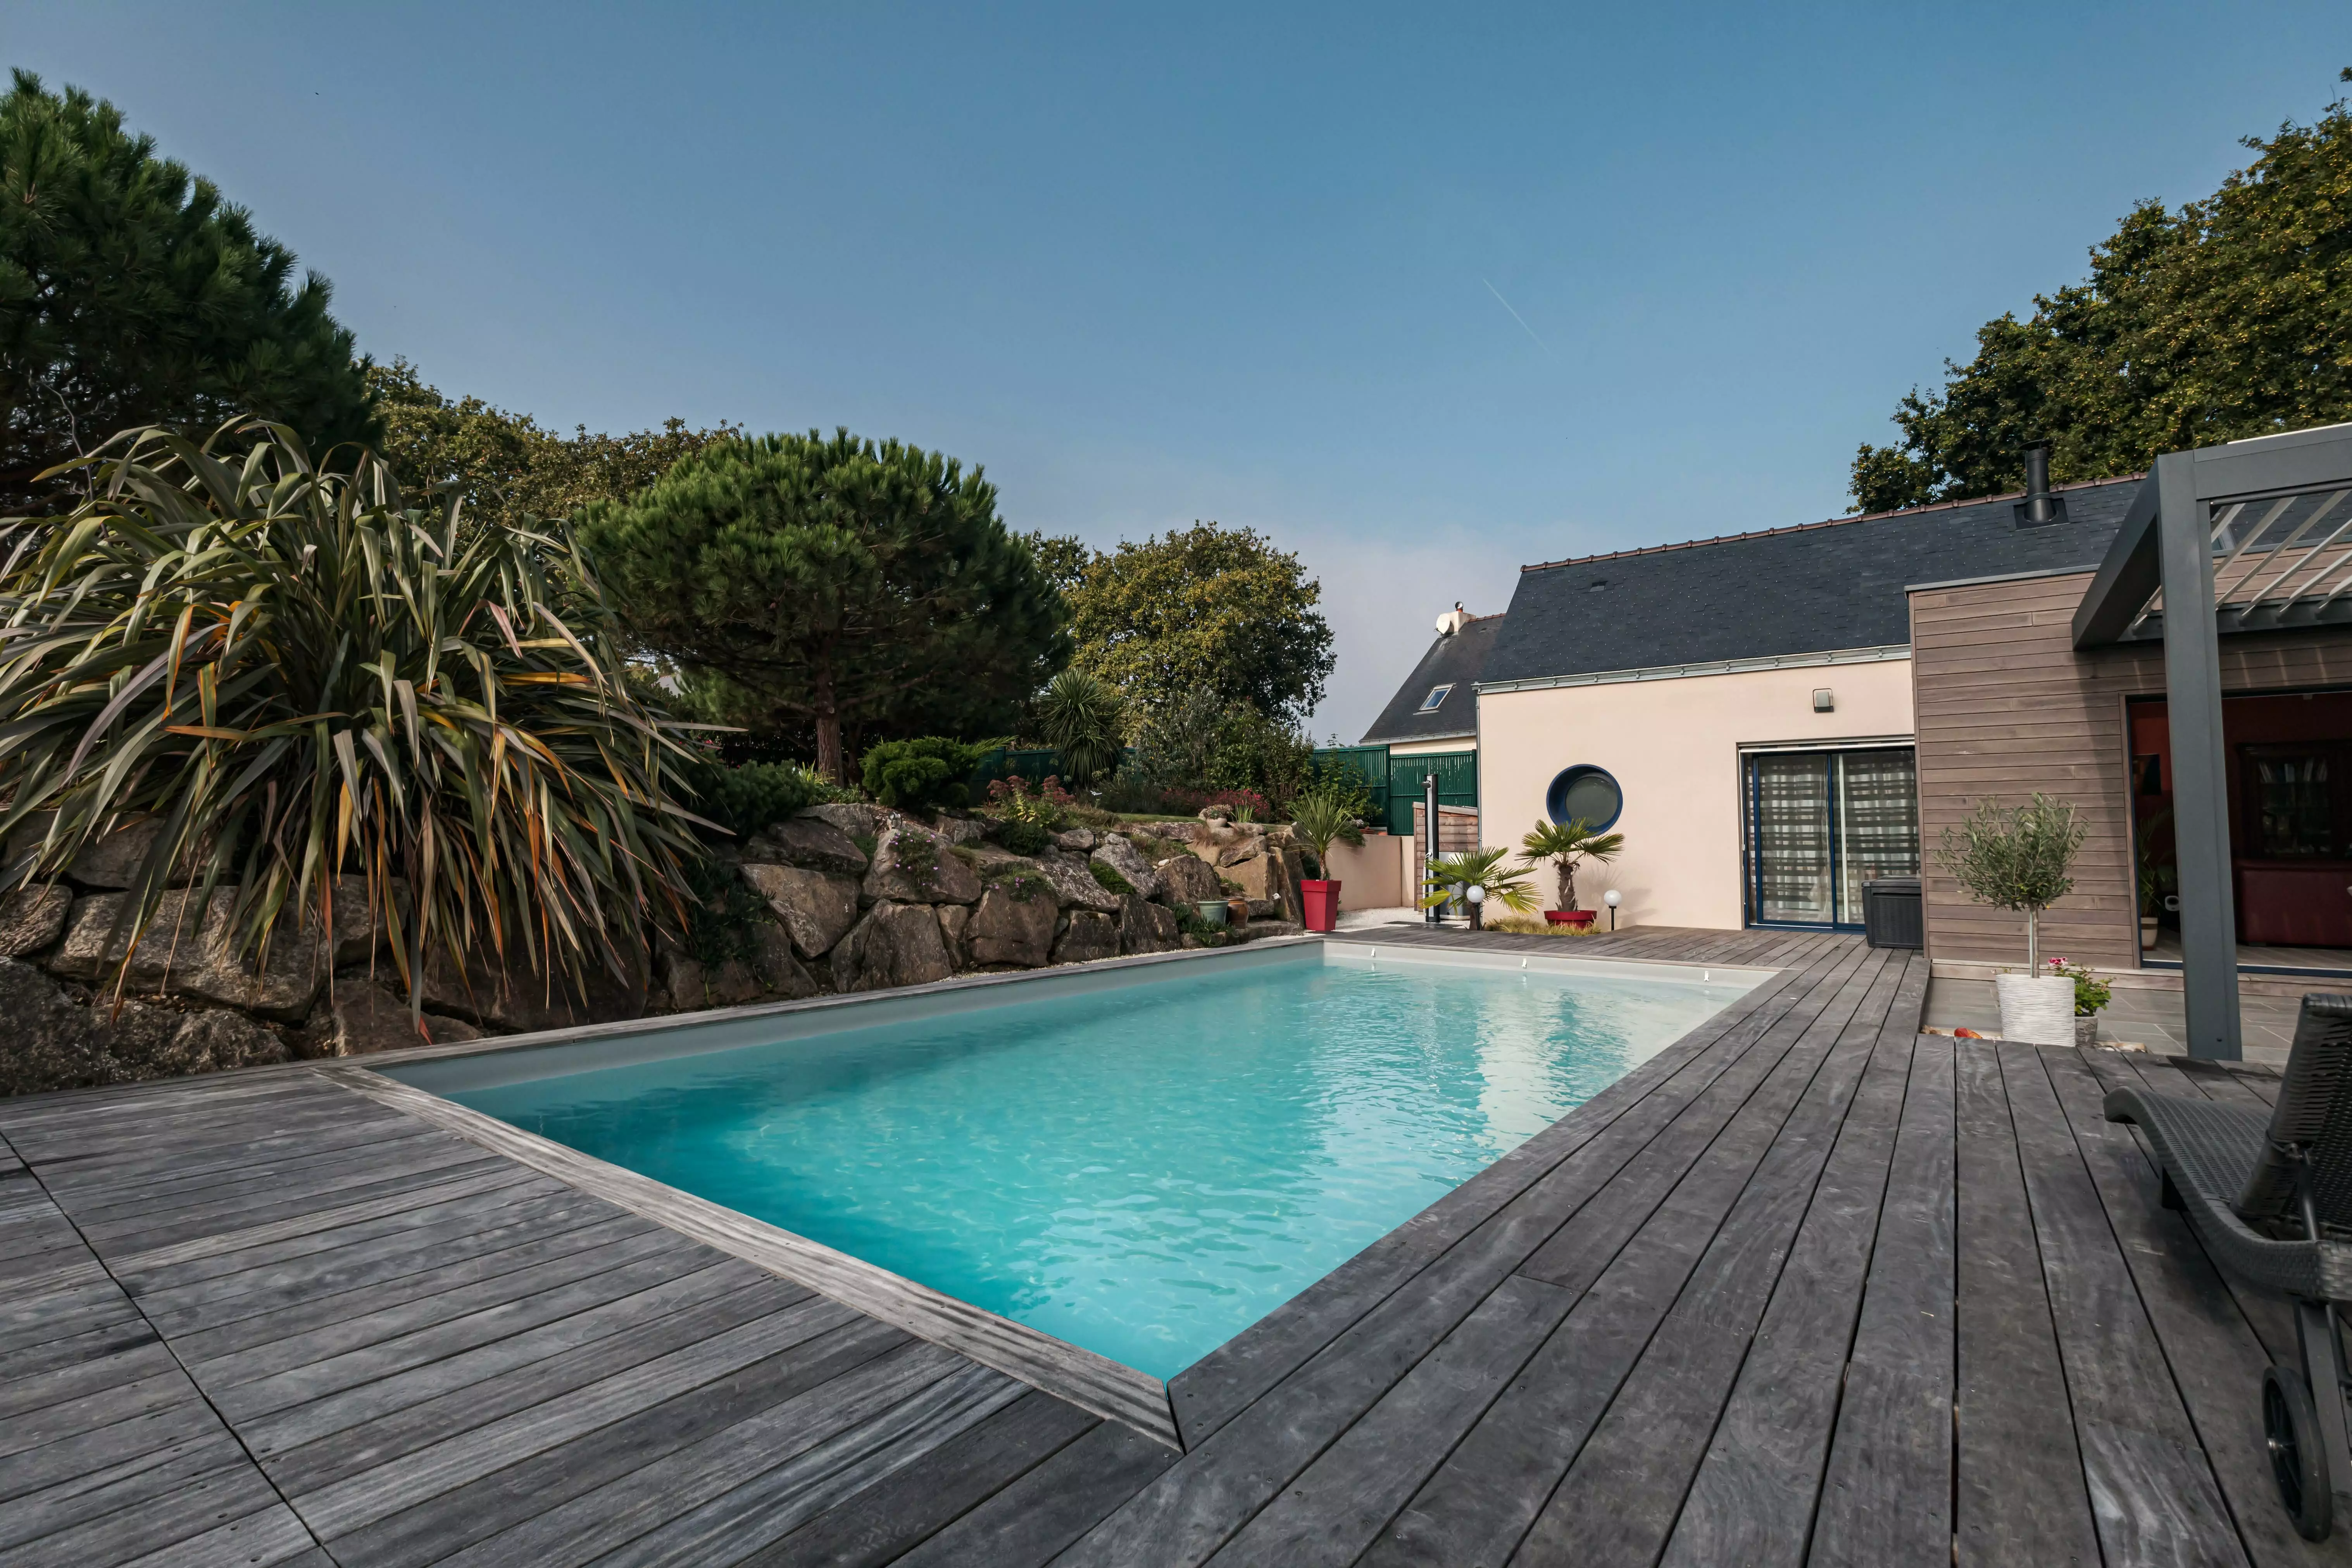 Une construction actuelle valorisant la piscine, adoucie par une terrasse qui conduit à un jardin rocheux agrémenté de touches tropicales.